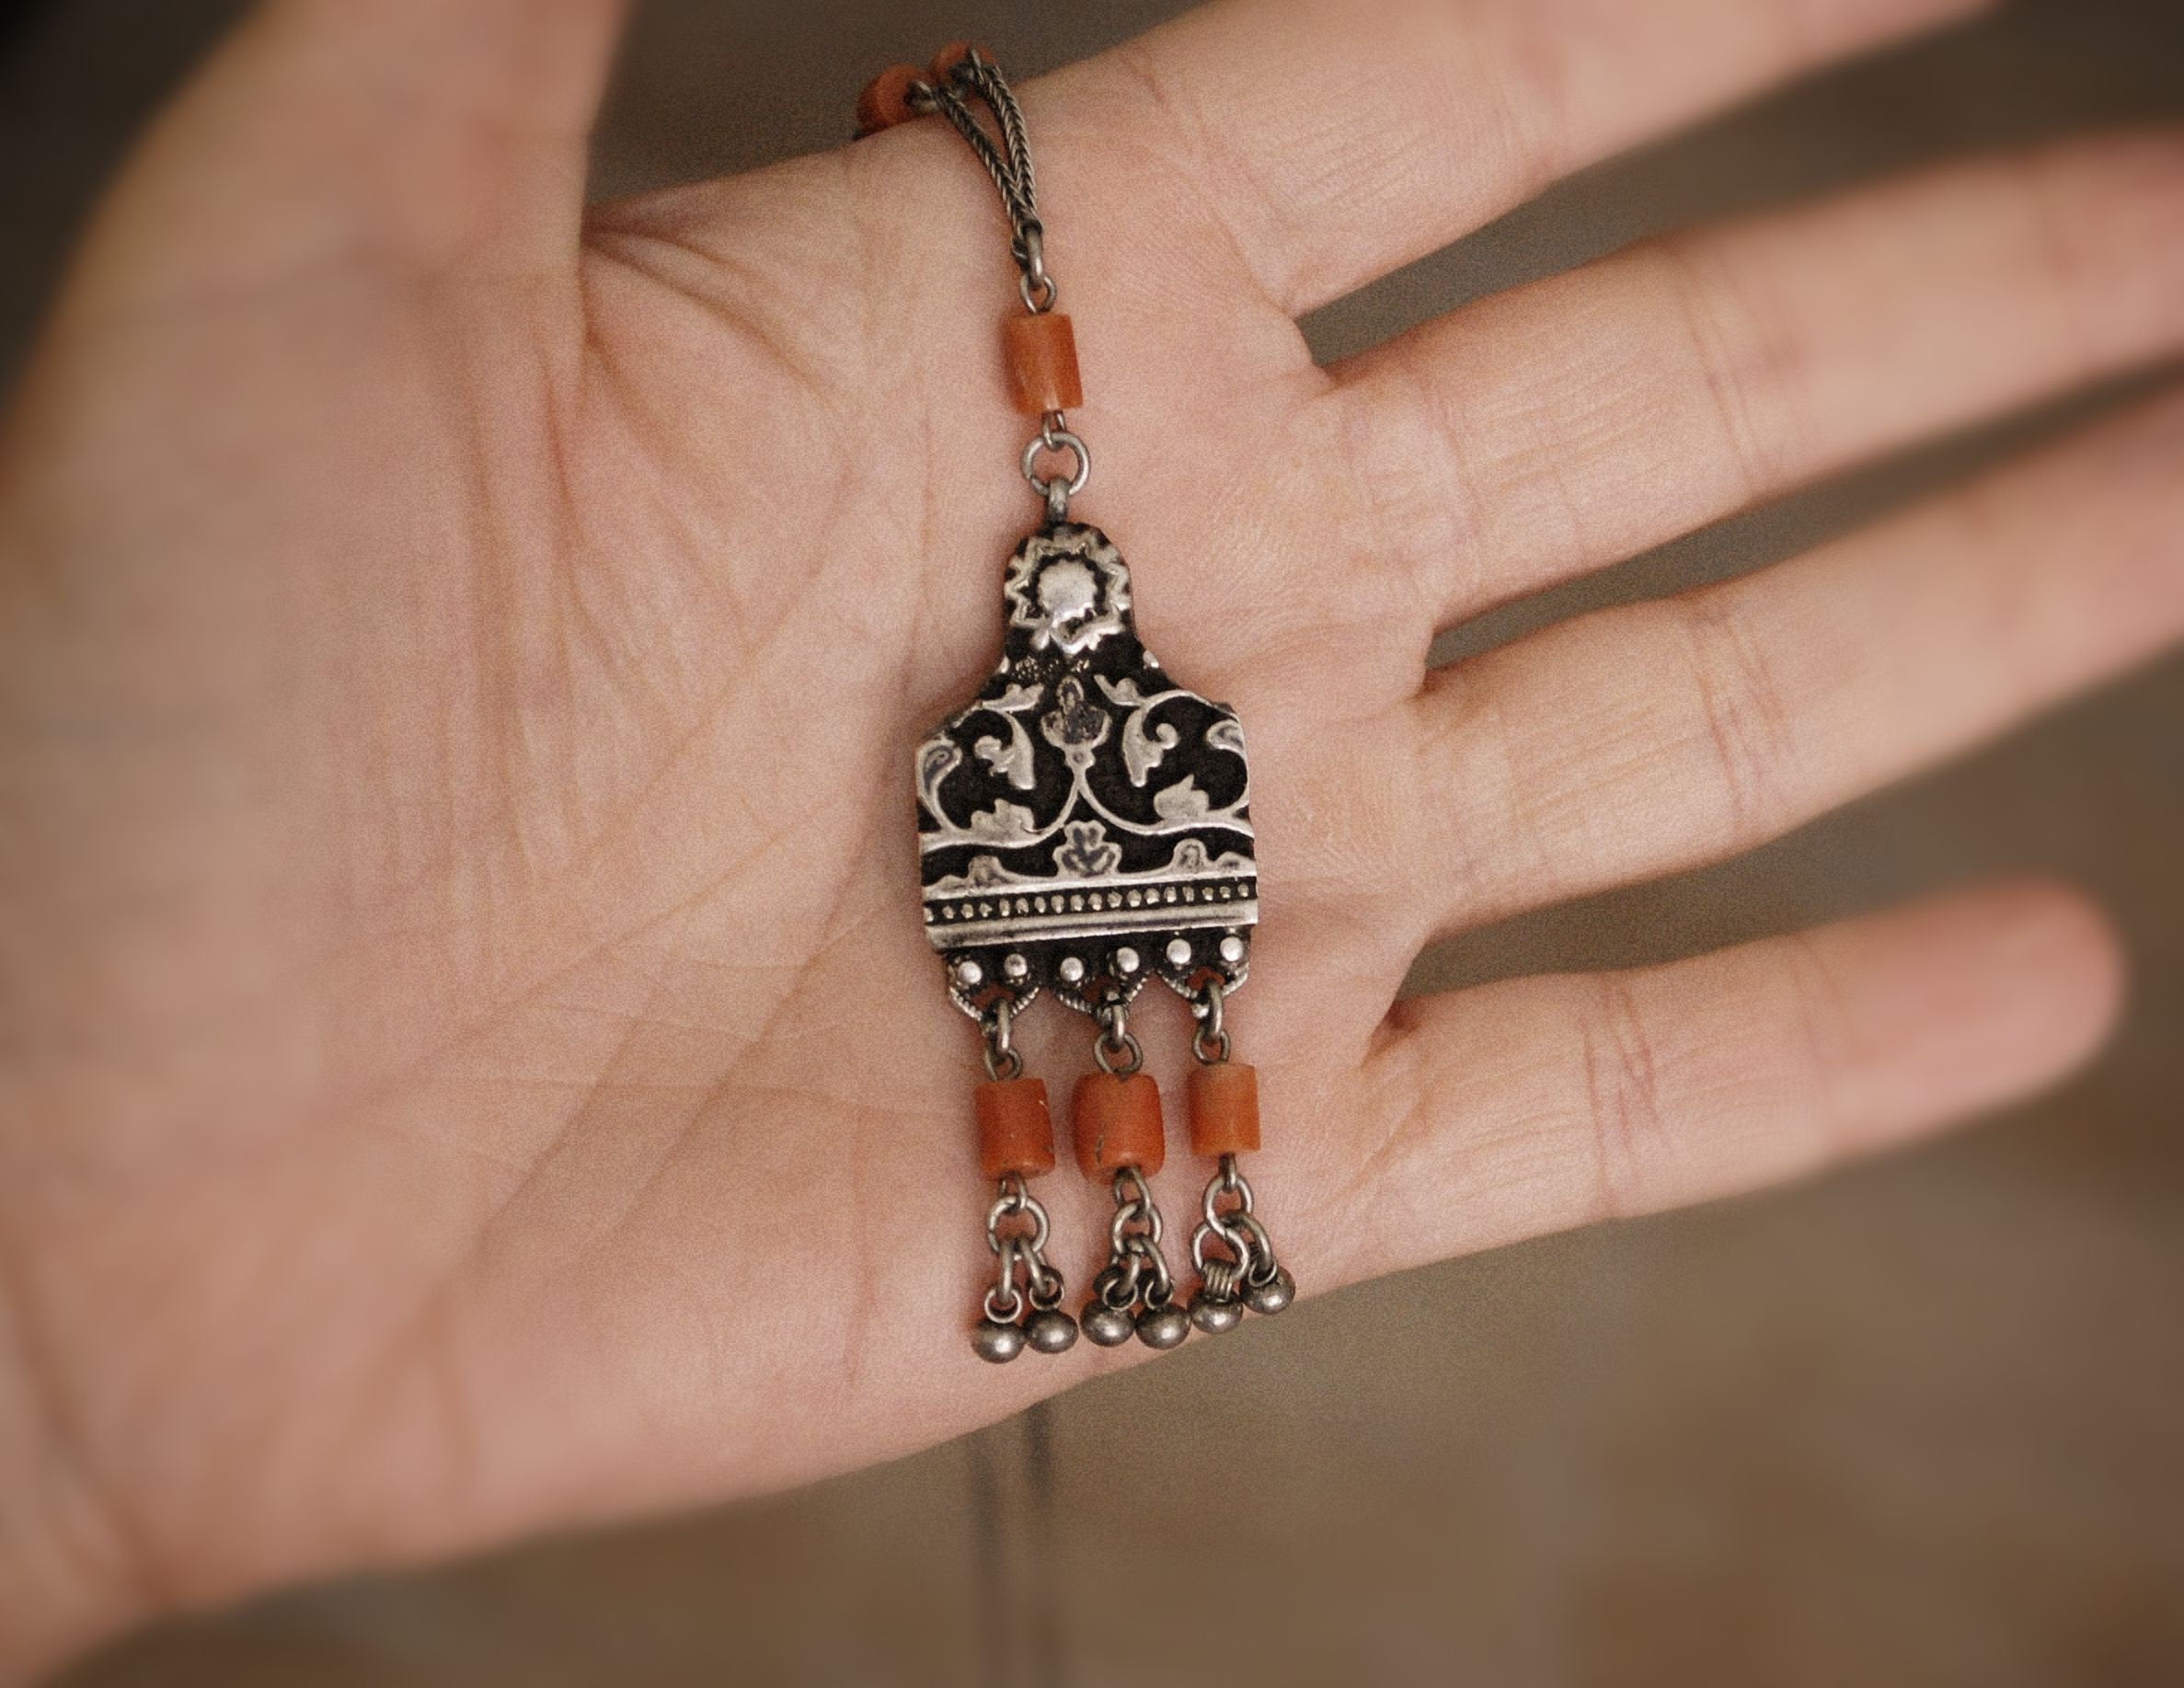 Yemen Coral Necklace - Old Yemen Coral Necklace - Yemen Jewelry - Ethnic Necklace - Yemenite Jewelry - Coral Necklace - Coral Jewelry